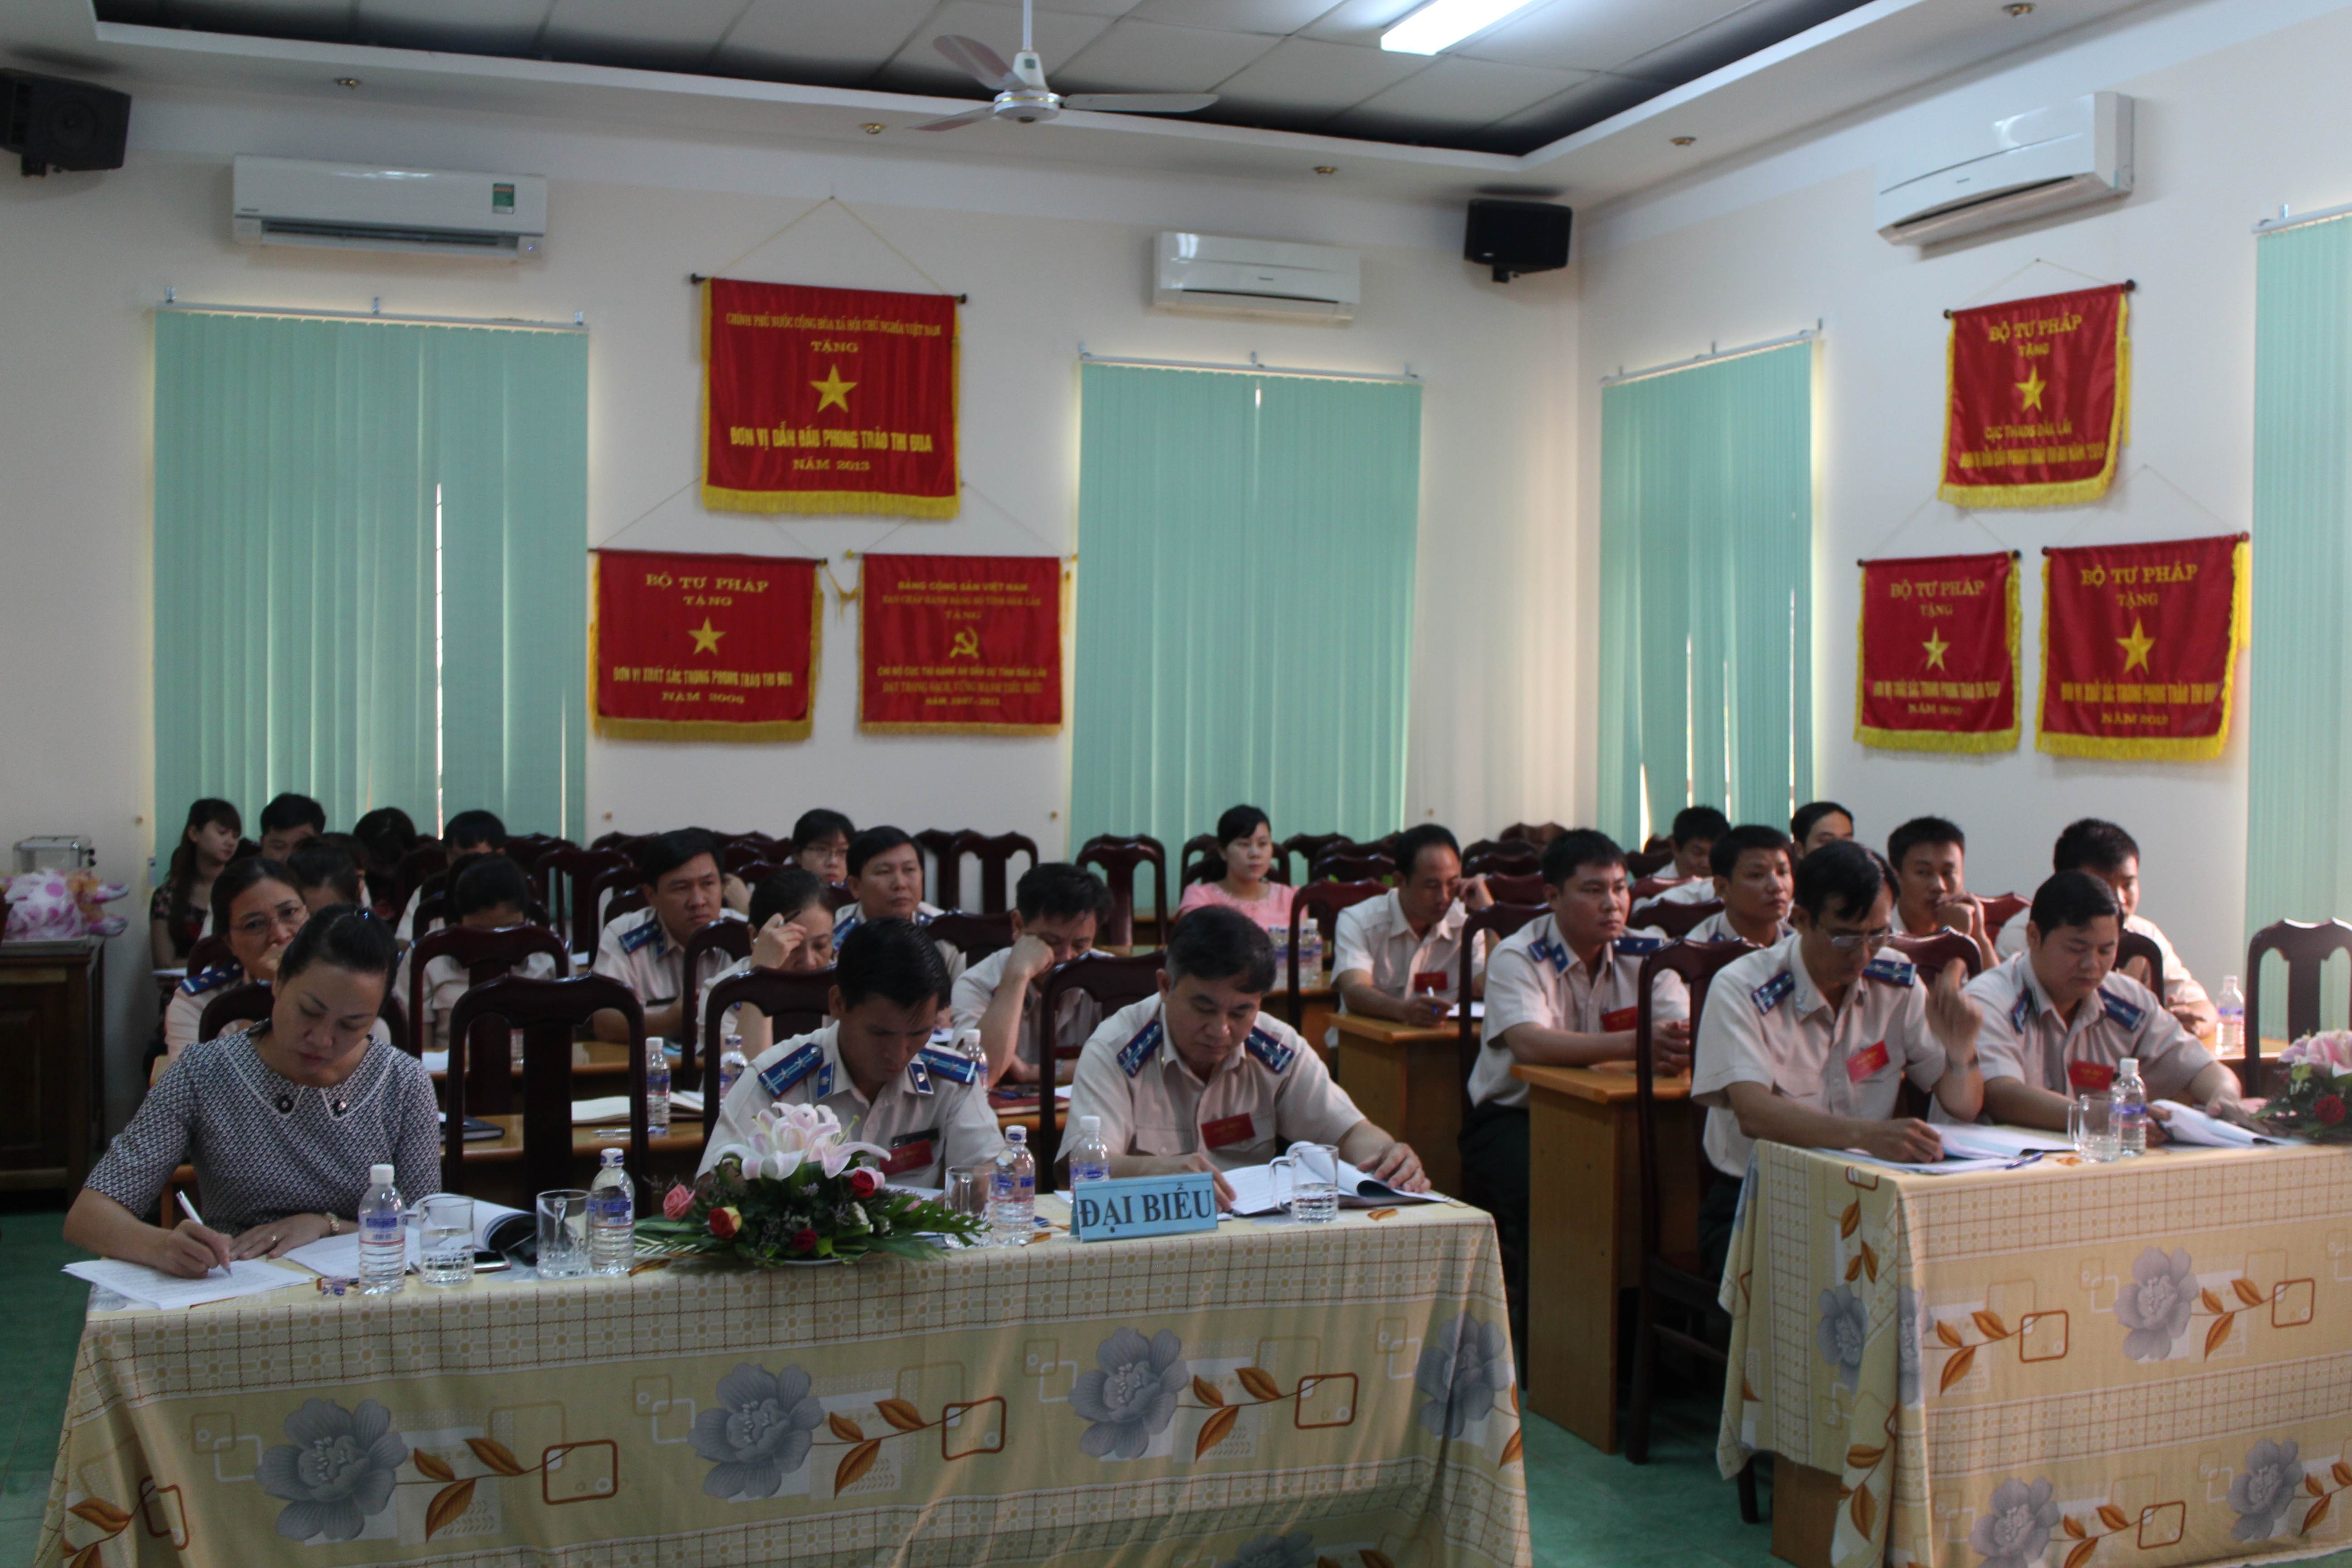 Đại hội Công đoàn Cơ sở Cục Thi hành án dân sự tỉnh Đắk Lắk đã tổ chức Đại hội lần thứ III, nhiệm kỳ 2016 - 2021